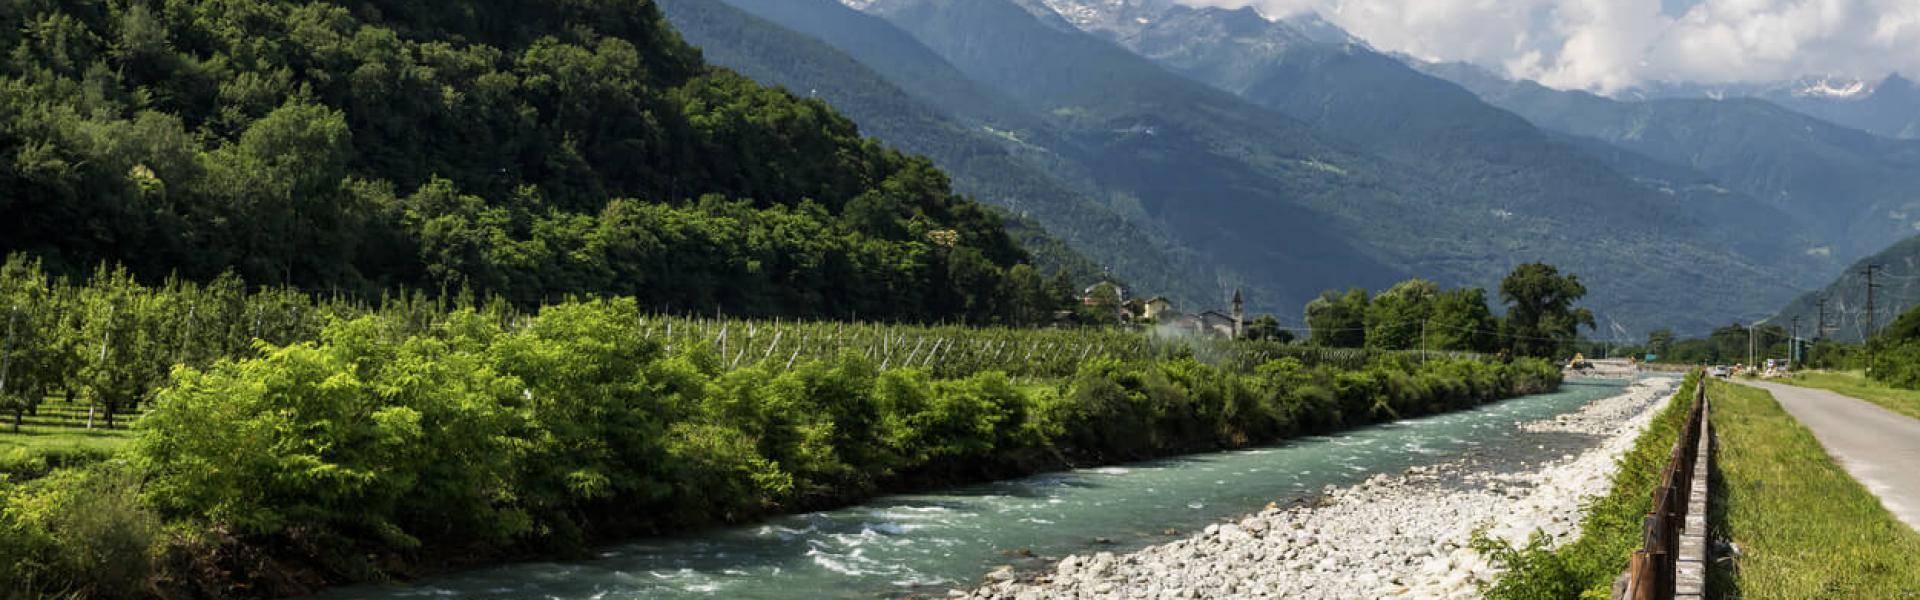 Il Sentiero Valtellina è una lunga pista pedonale e ciclabile immersa nel verde della Valtellina